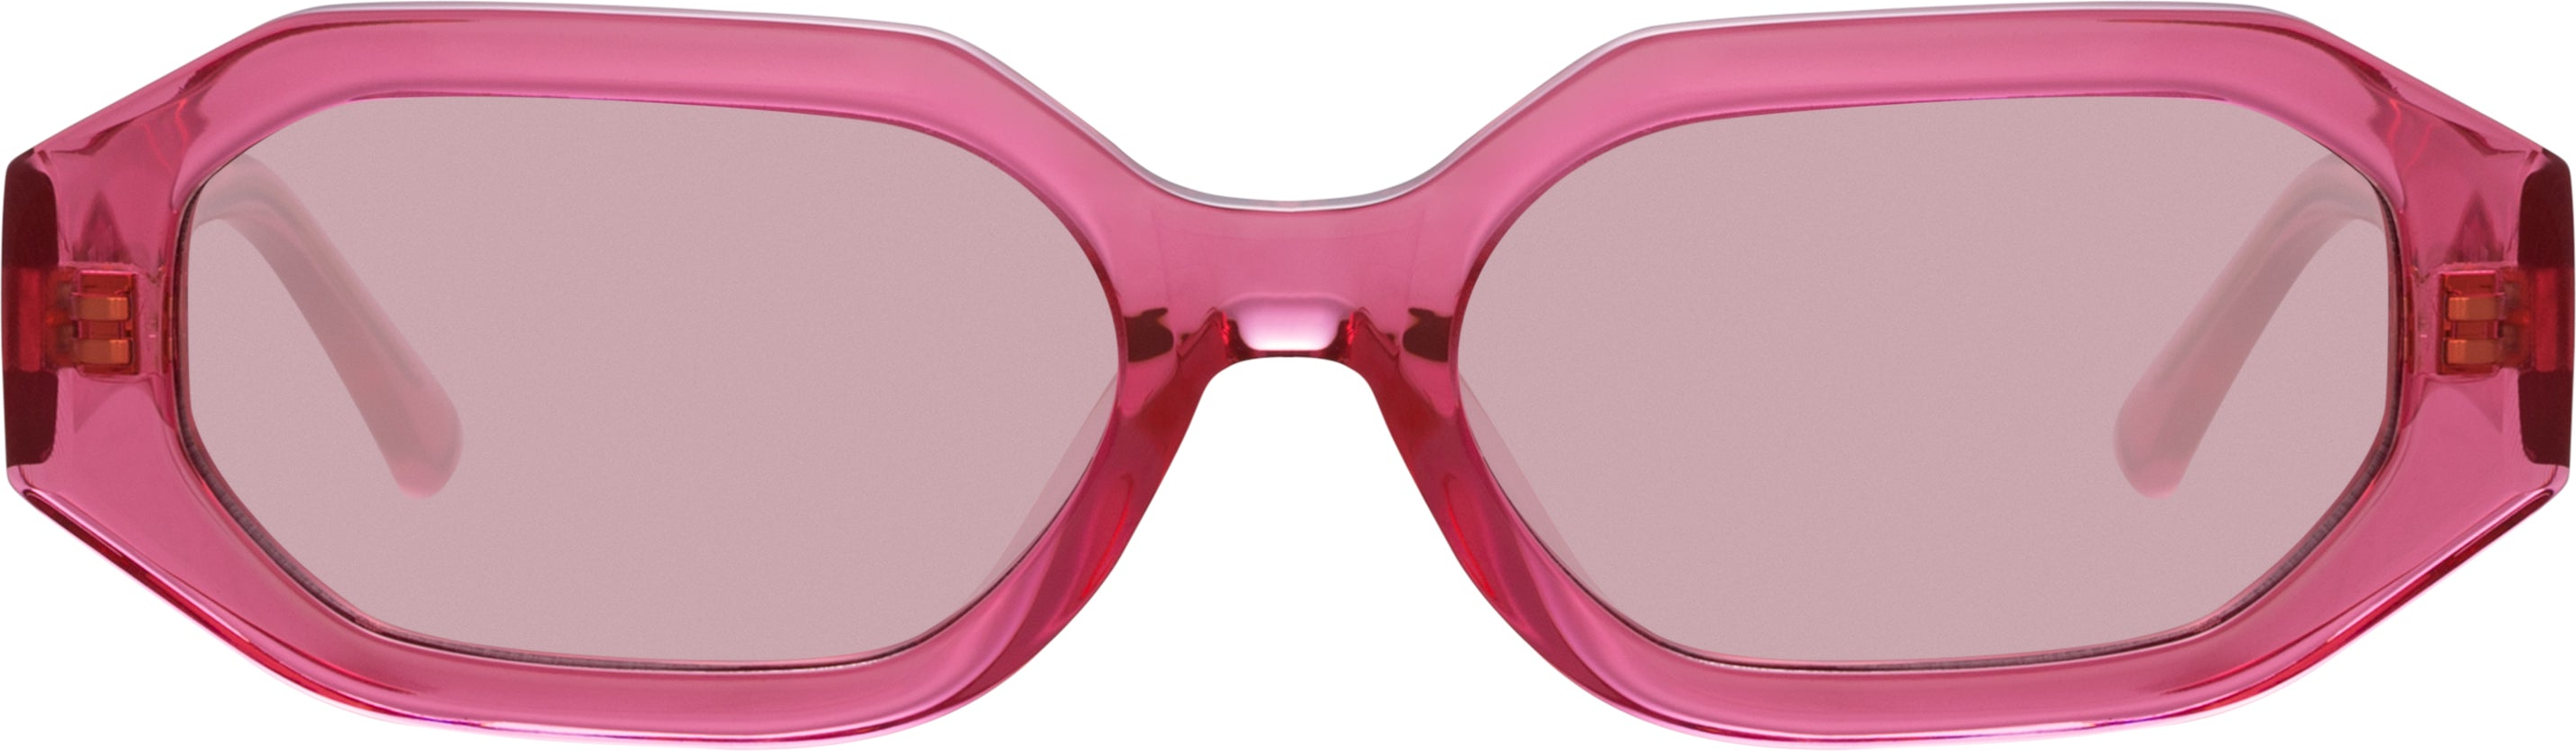 Color_ATTICO14C4SUN - The Attico Irene Angular Sunglasses in Strawberry